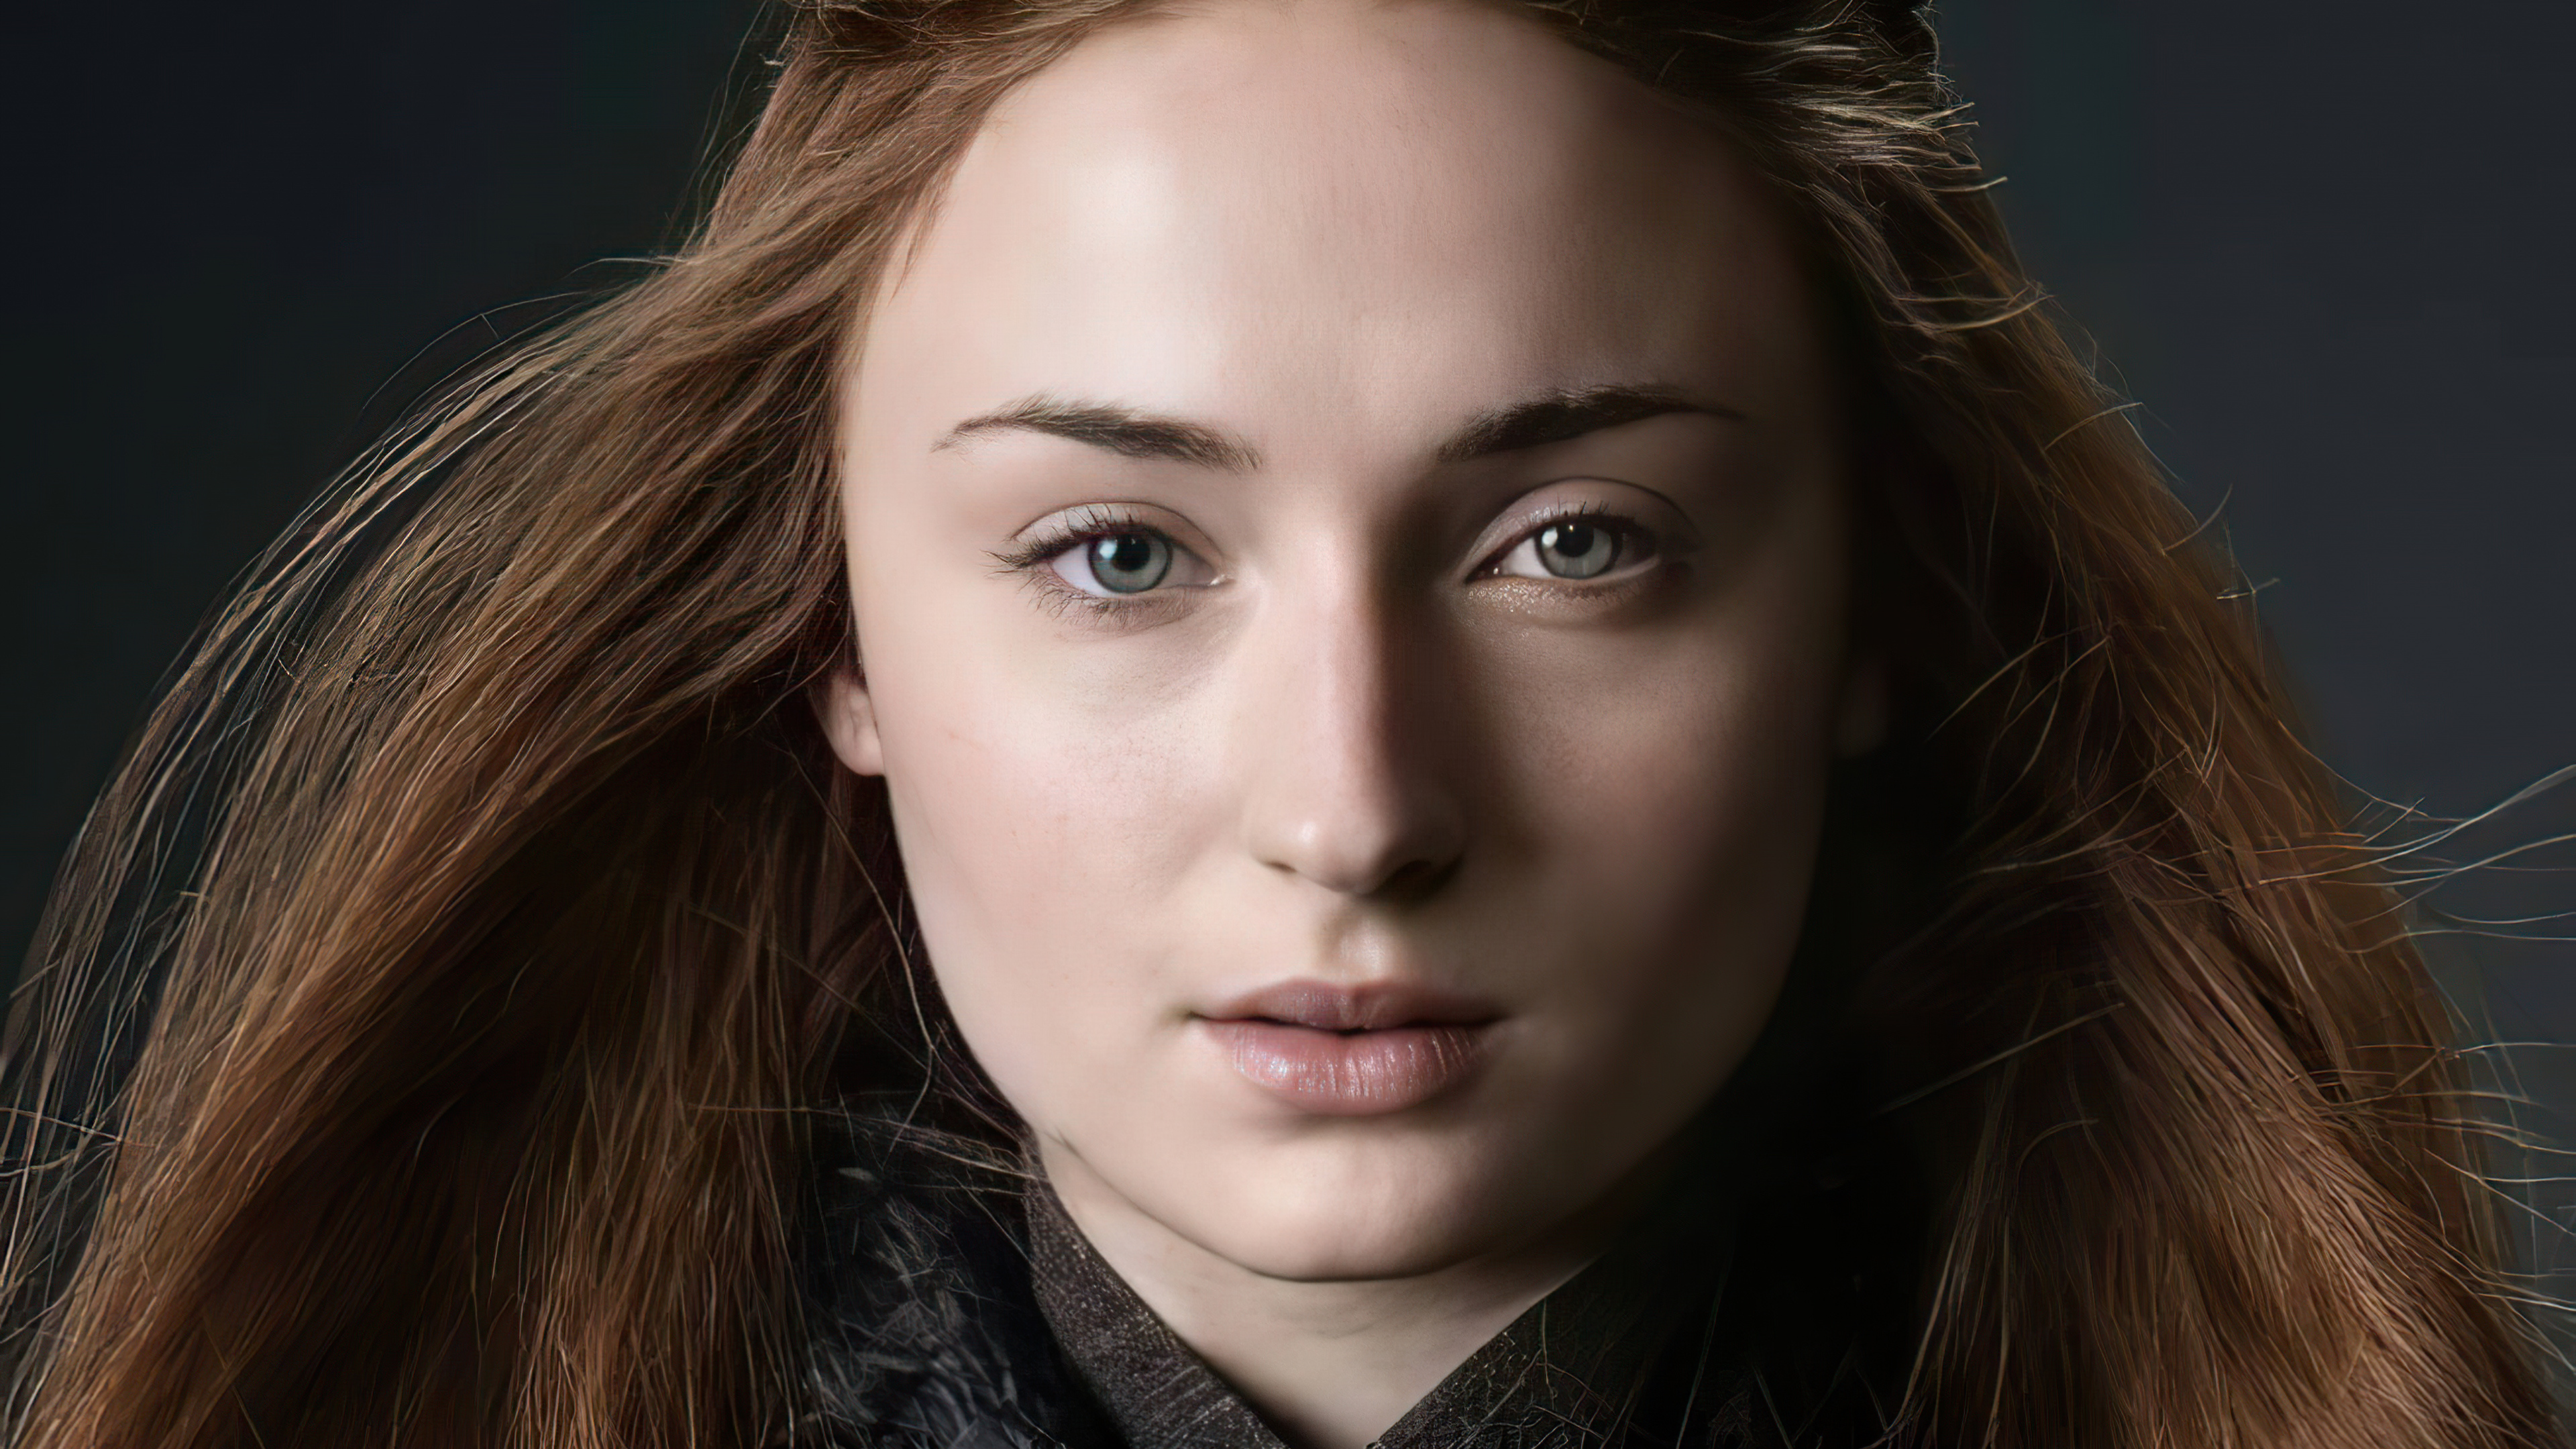 Sansa Stark, TV show character, Sophie Turner photoshoot, High definition wallpaper, 3840x2160 4K Desktop